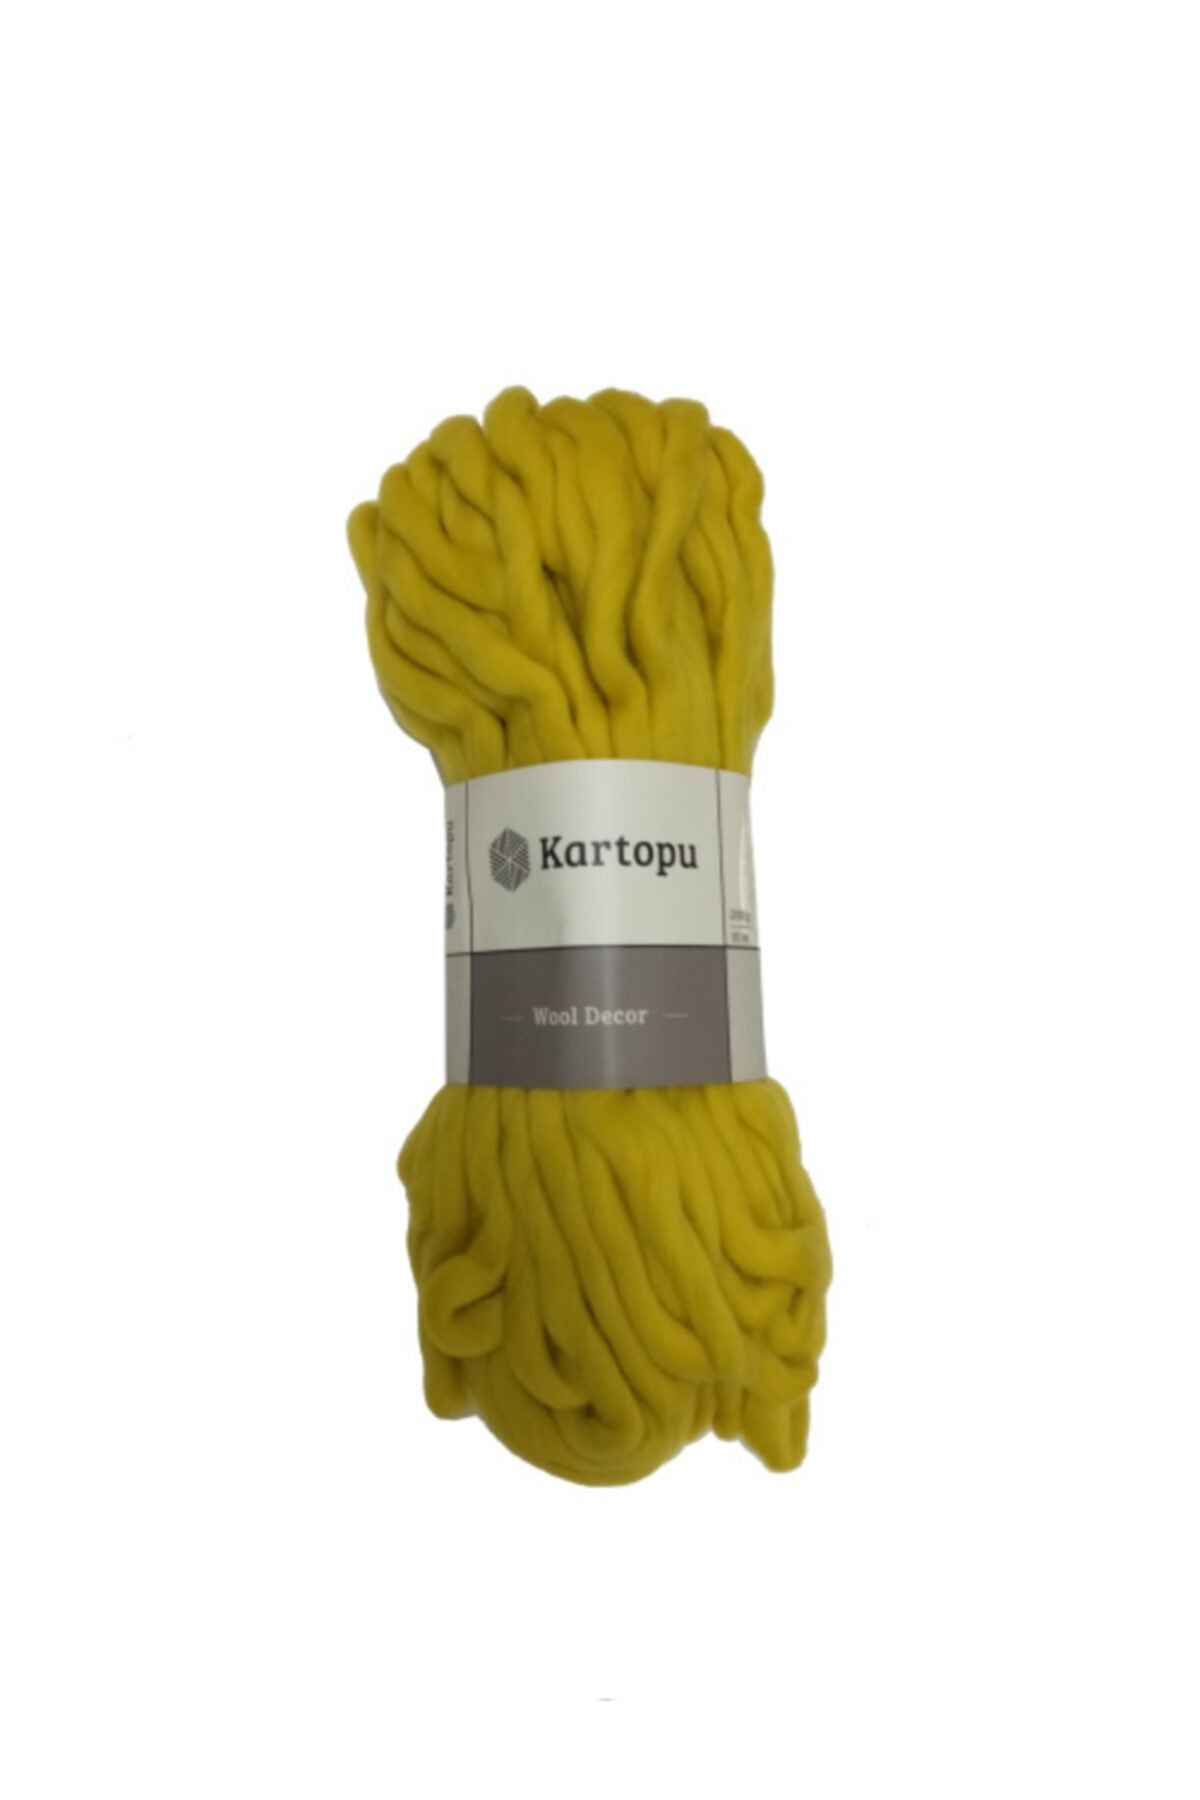 Kartopu Wool Decor Sarı El Örgü Ipi - K1322